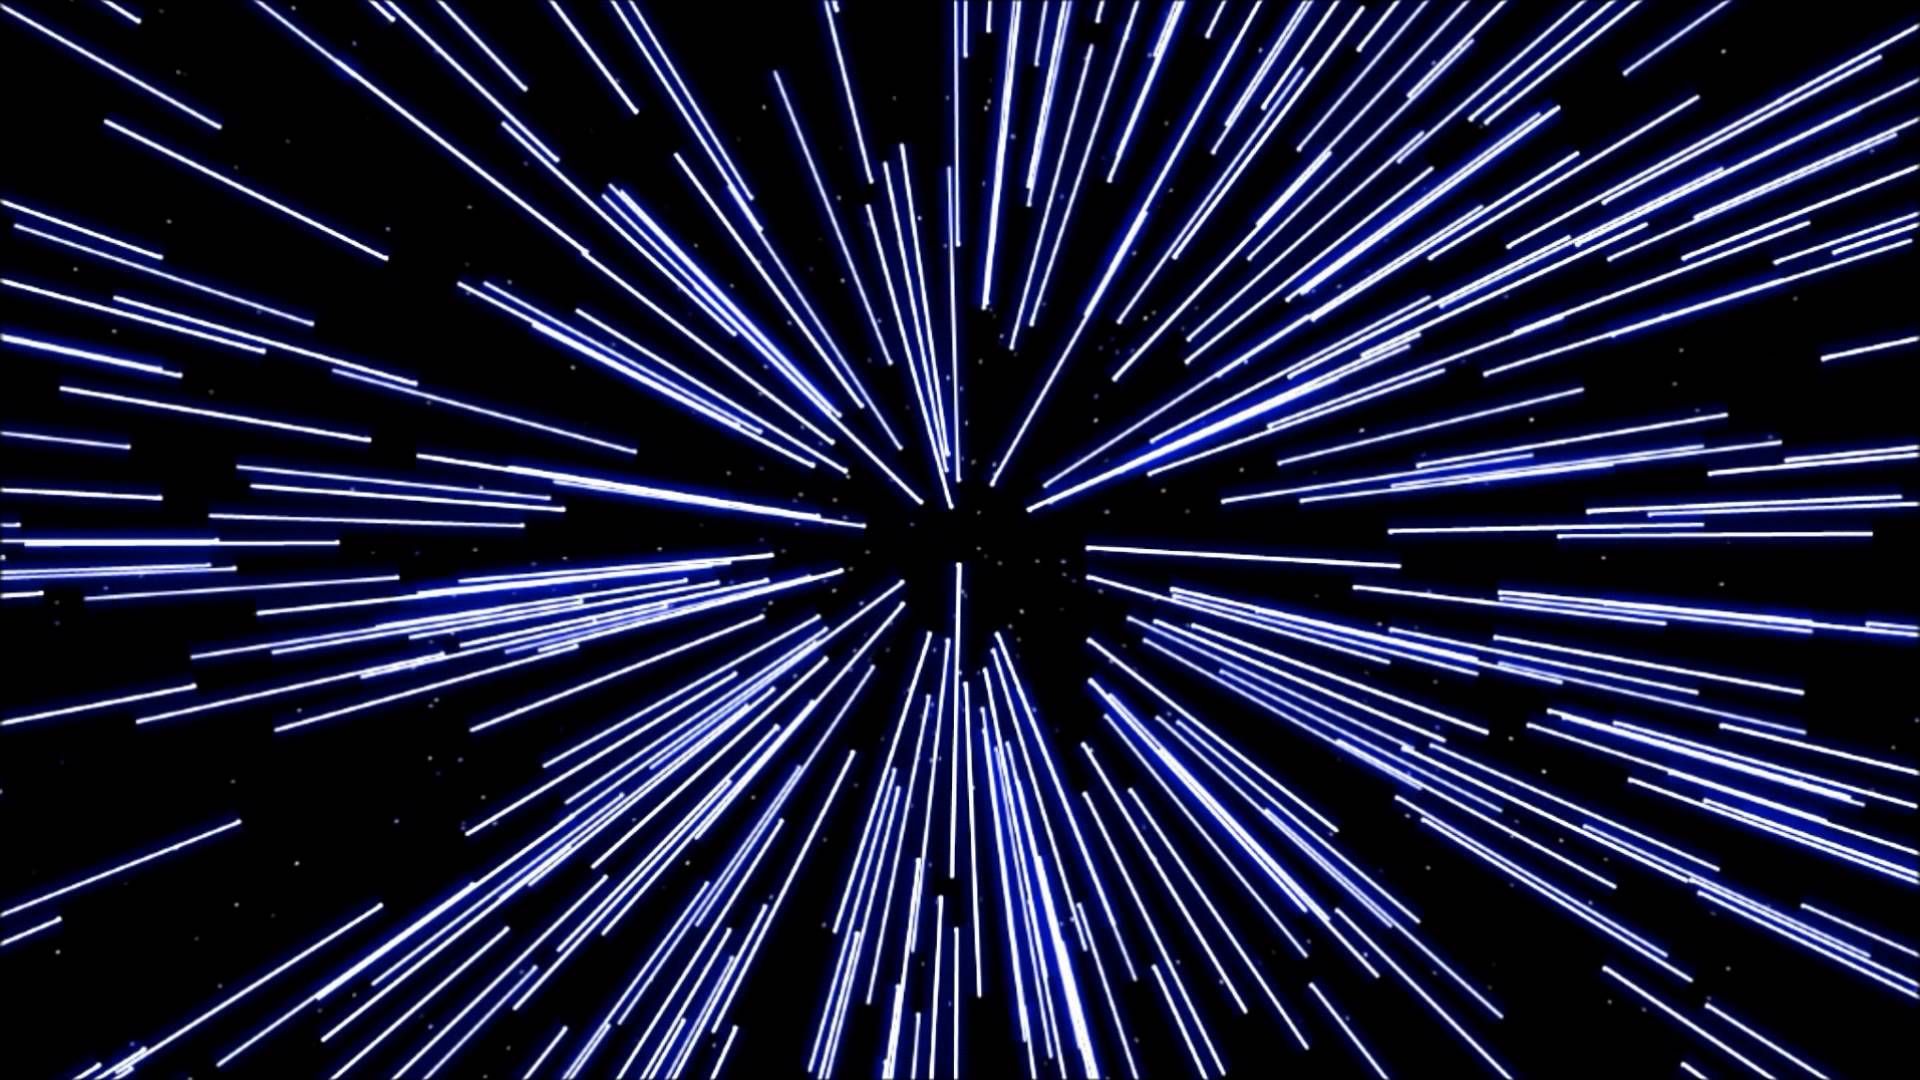 3D HD Star Wars Jump To Lightspeed Hyperspace Star Trek Warp Animated An. Star trek warp, Star wars art, Star wars